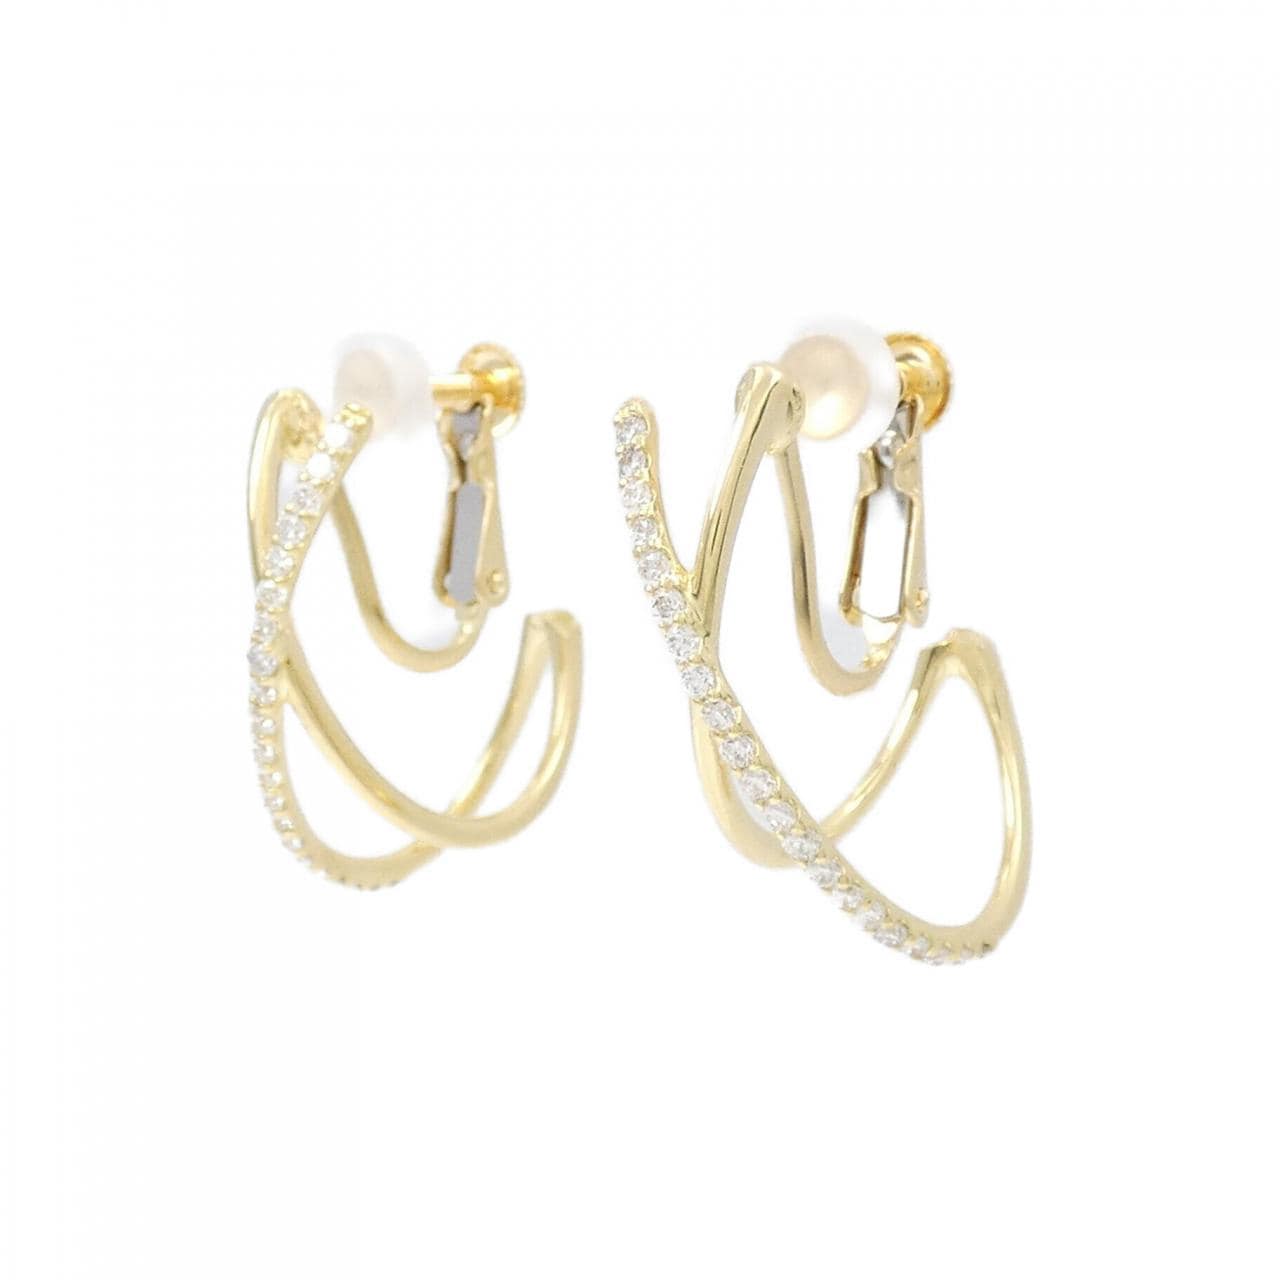 K18YG Diamond earrings 0.40CT